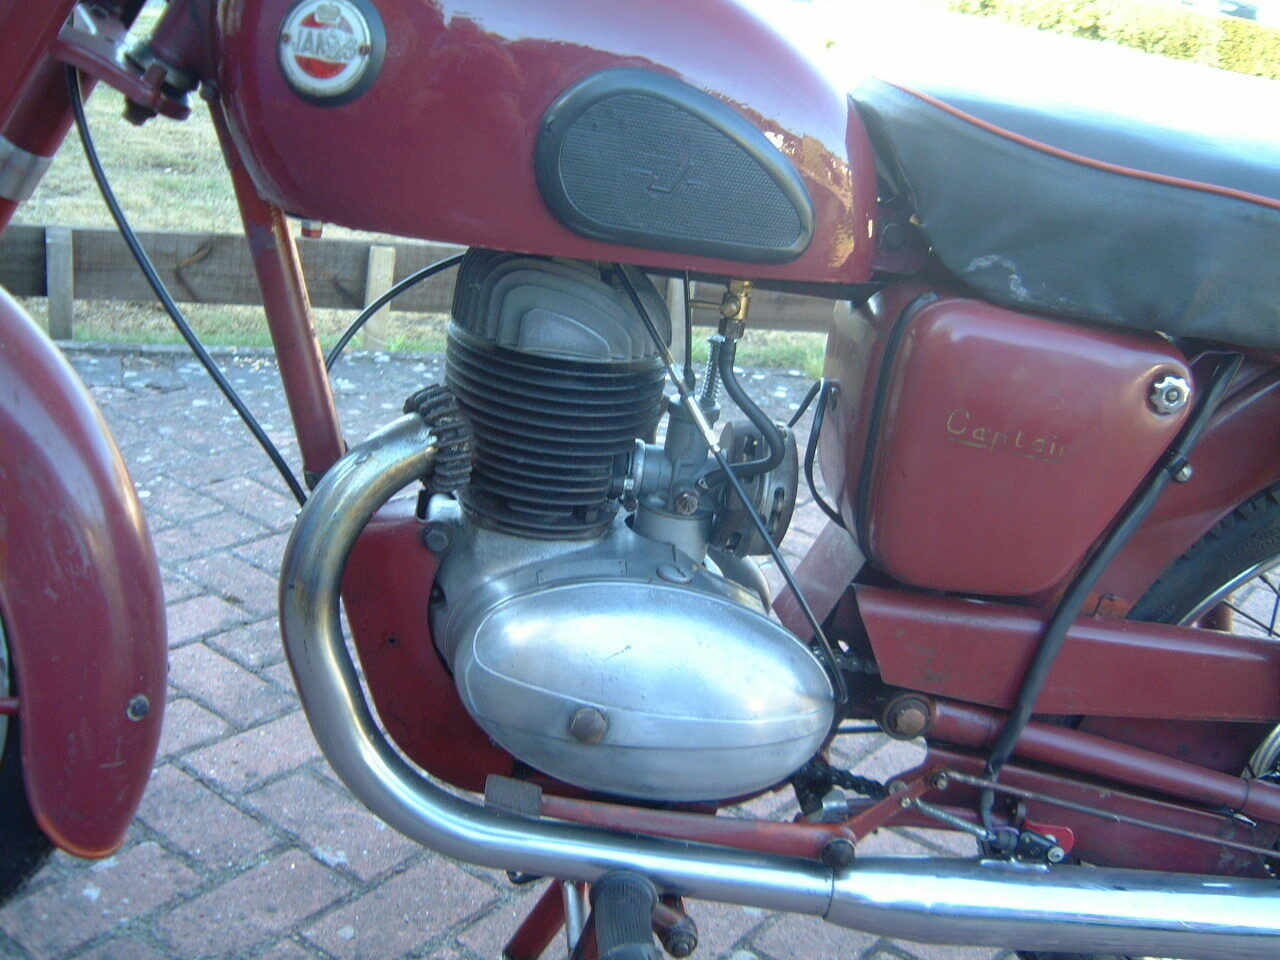 villiers motorcycle engine serial numbers